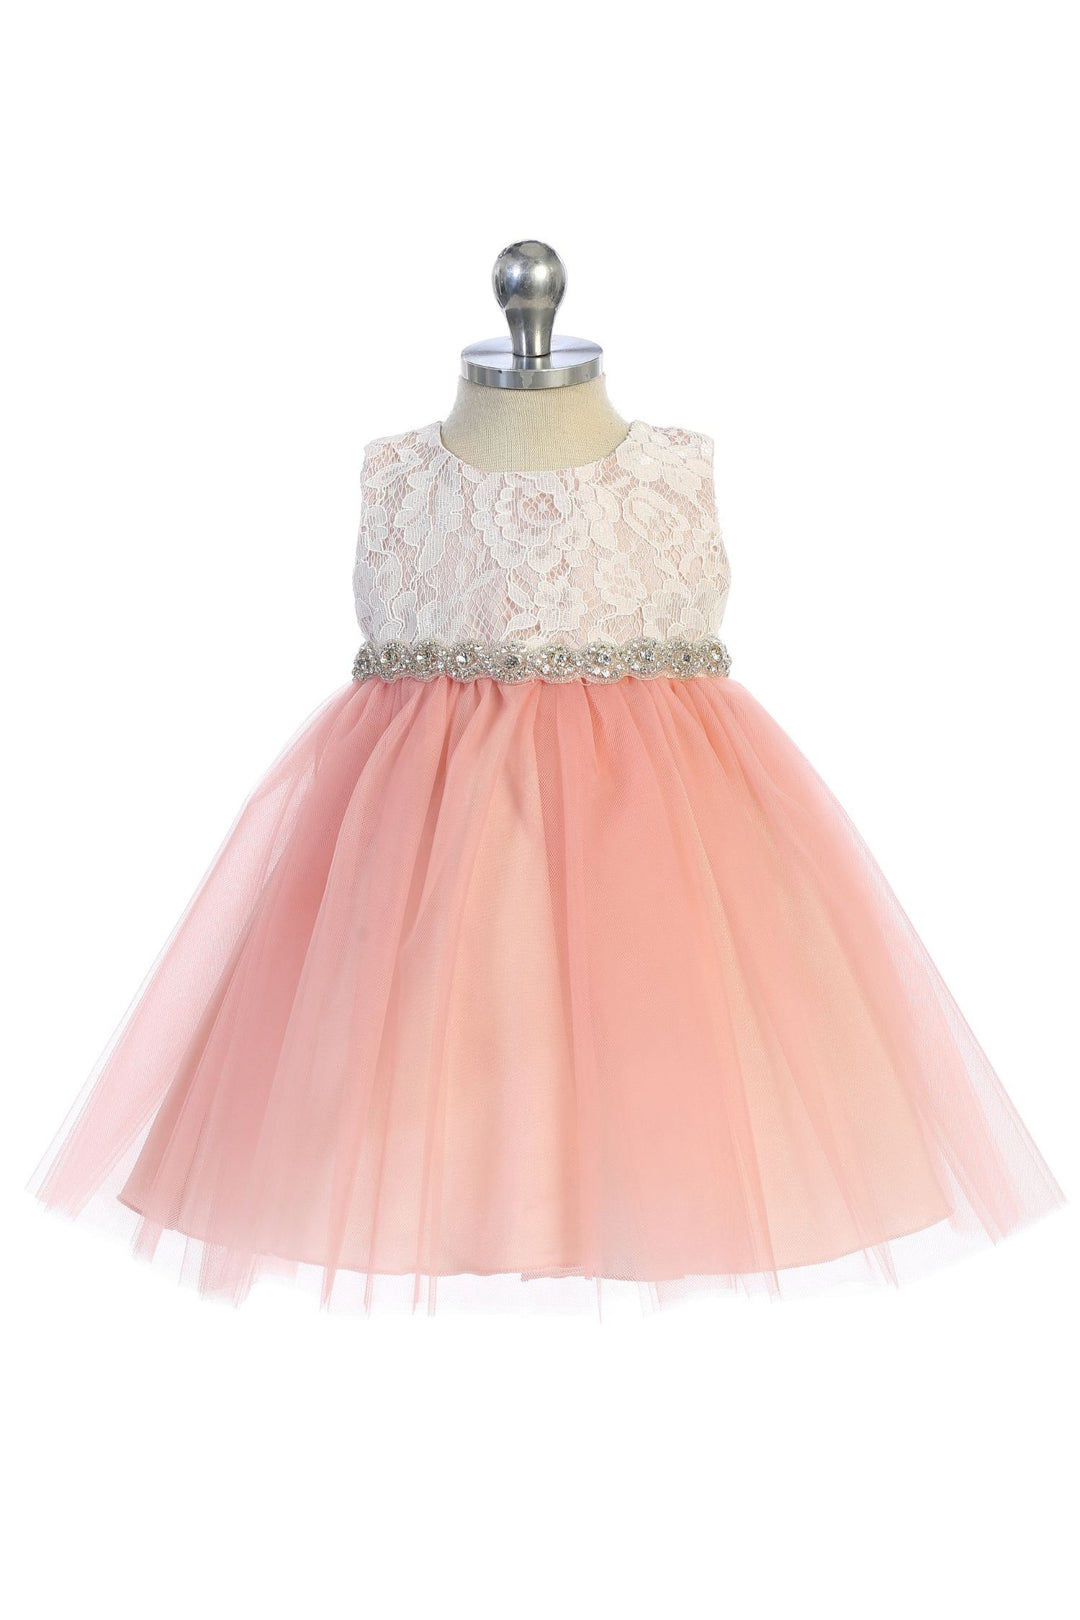 Lace Baby Dress w/ Rhinestone Trim